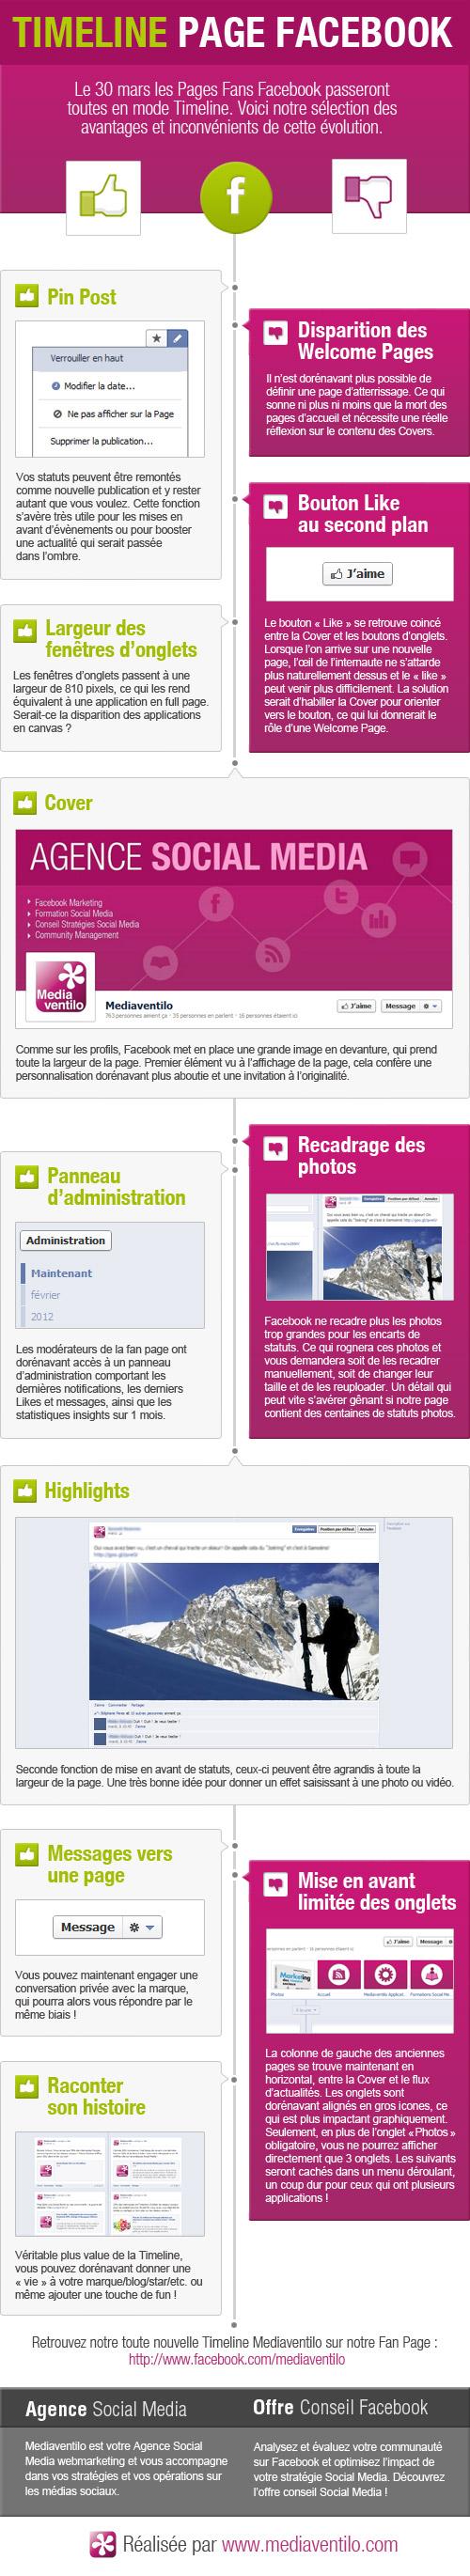 Infographie Timeline Facebook Mediaventilo [Infographie] Evolution de Facebook: arrivée de la Timeline pour les Pages!